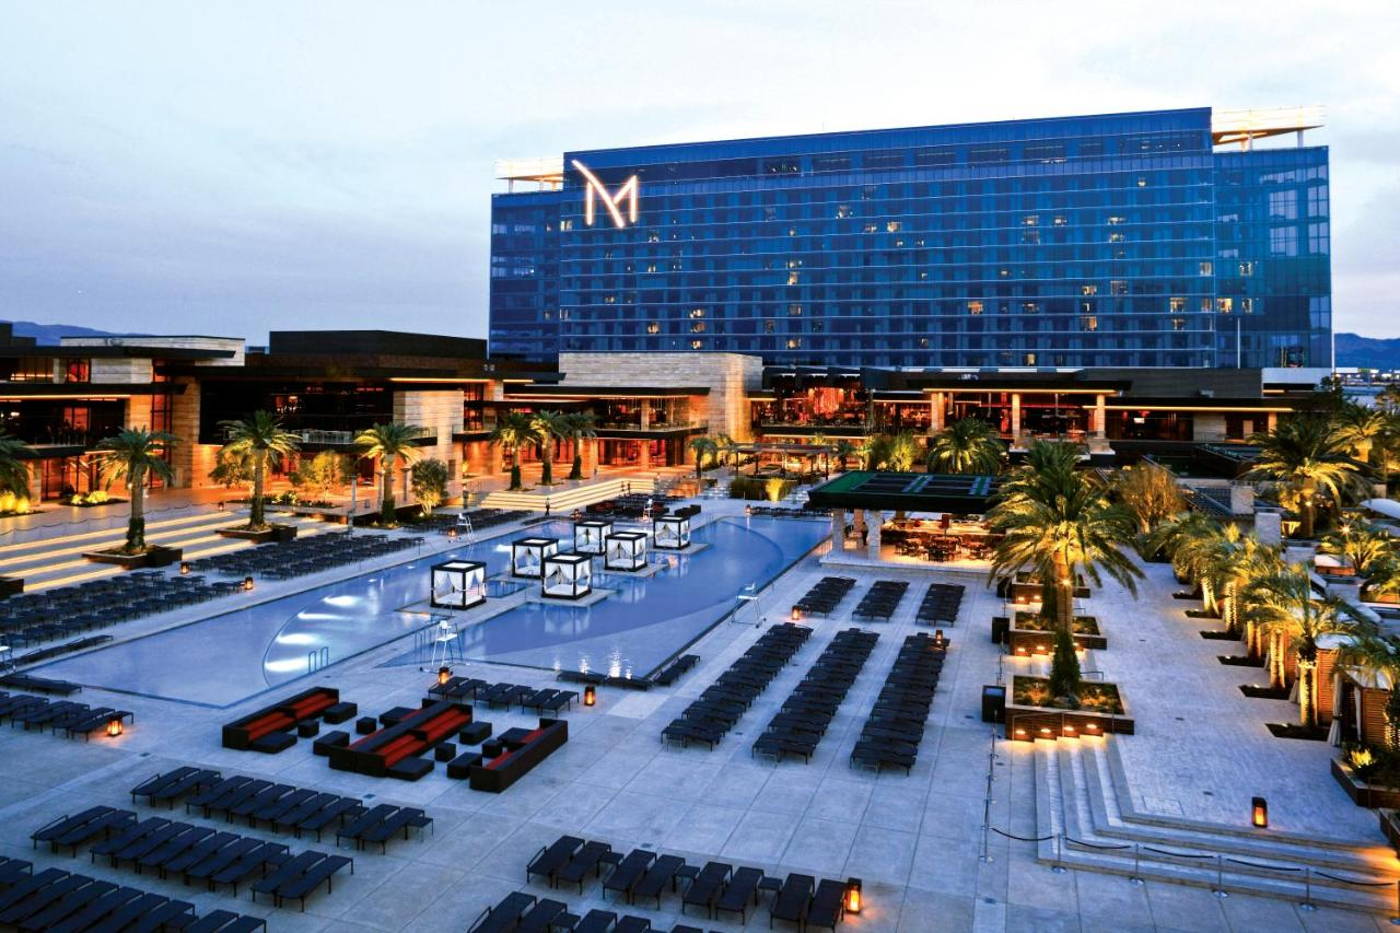 M Pool at The M Resort Las Vegas